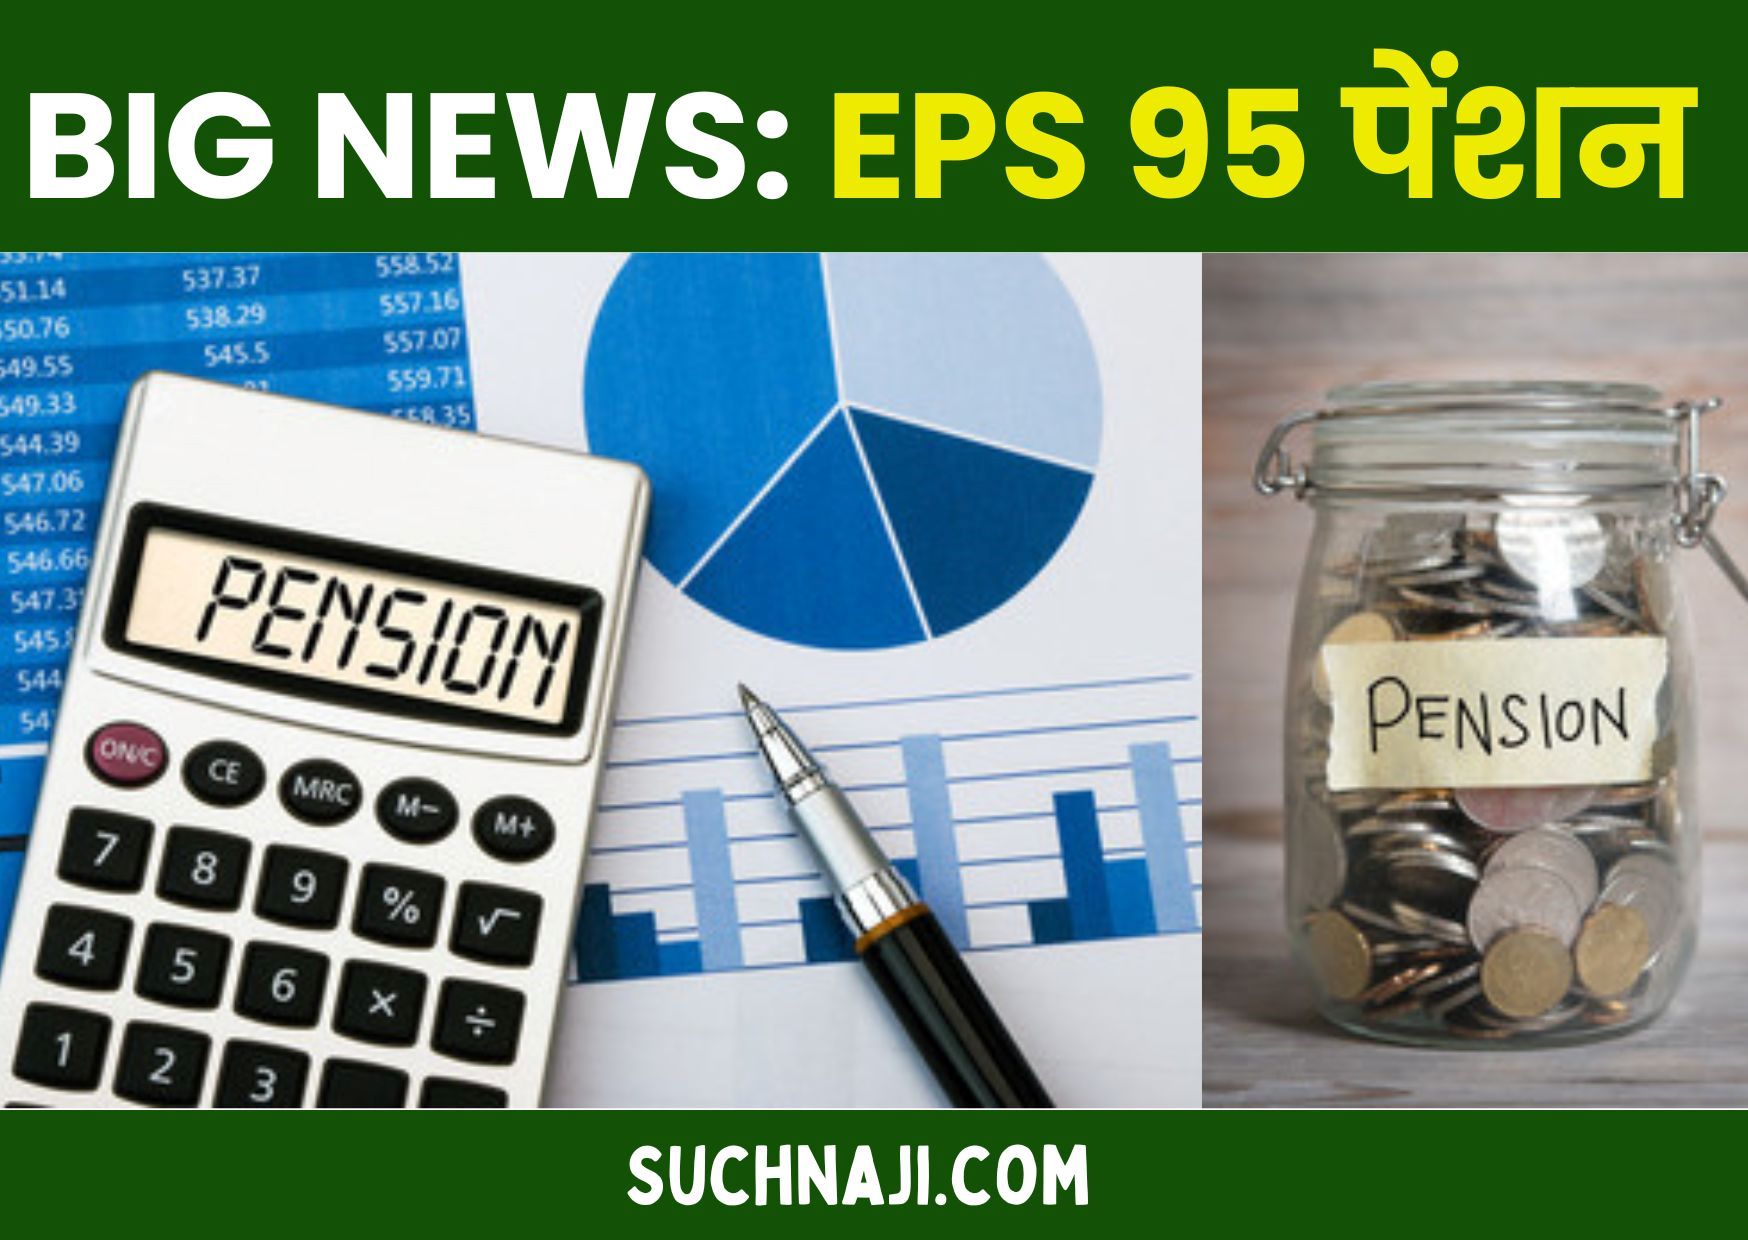 EPS 95 Pension: पेंशन को लेकर EPFO और सरकार को 4 सुझाव, पेंशन योग्य वेतन सीमा में संसोधन से बढ़ेगा पैसा